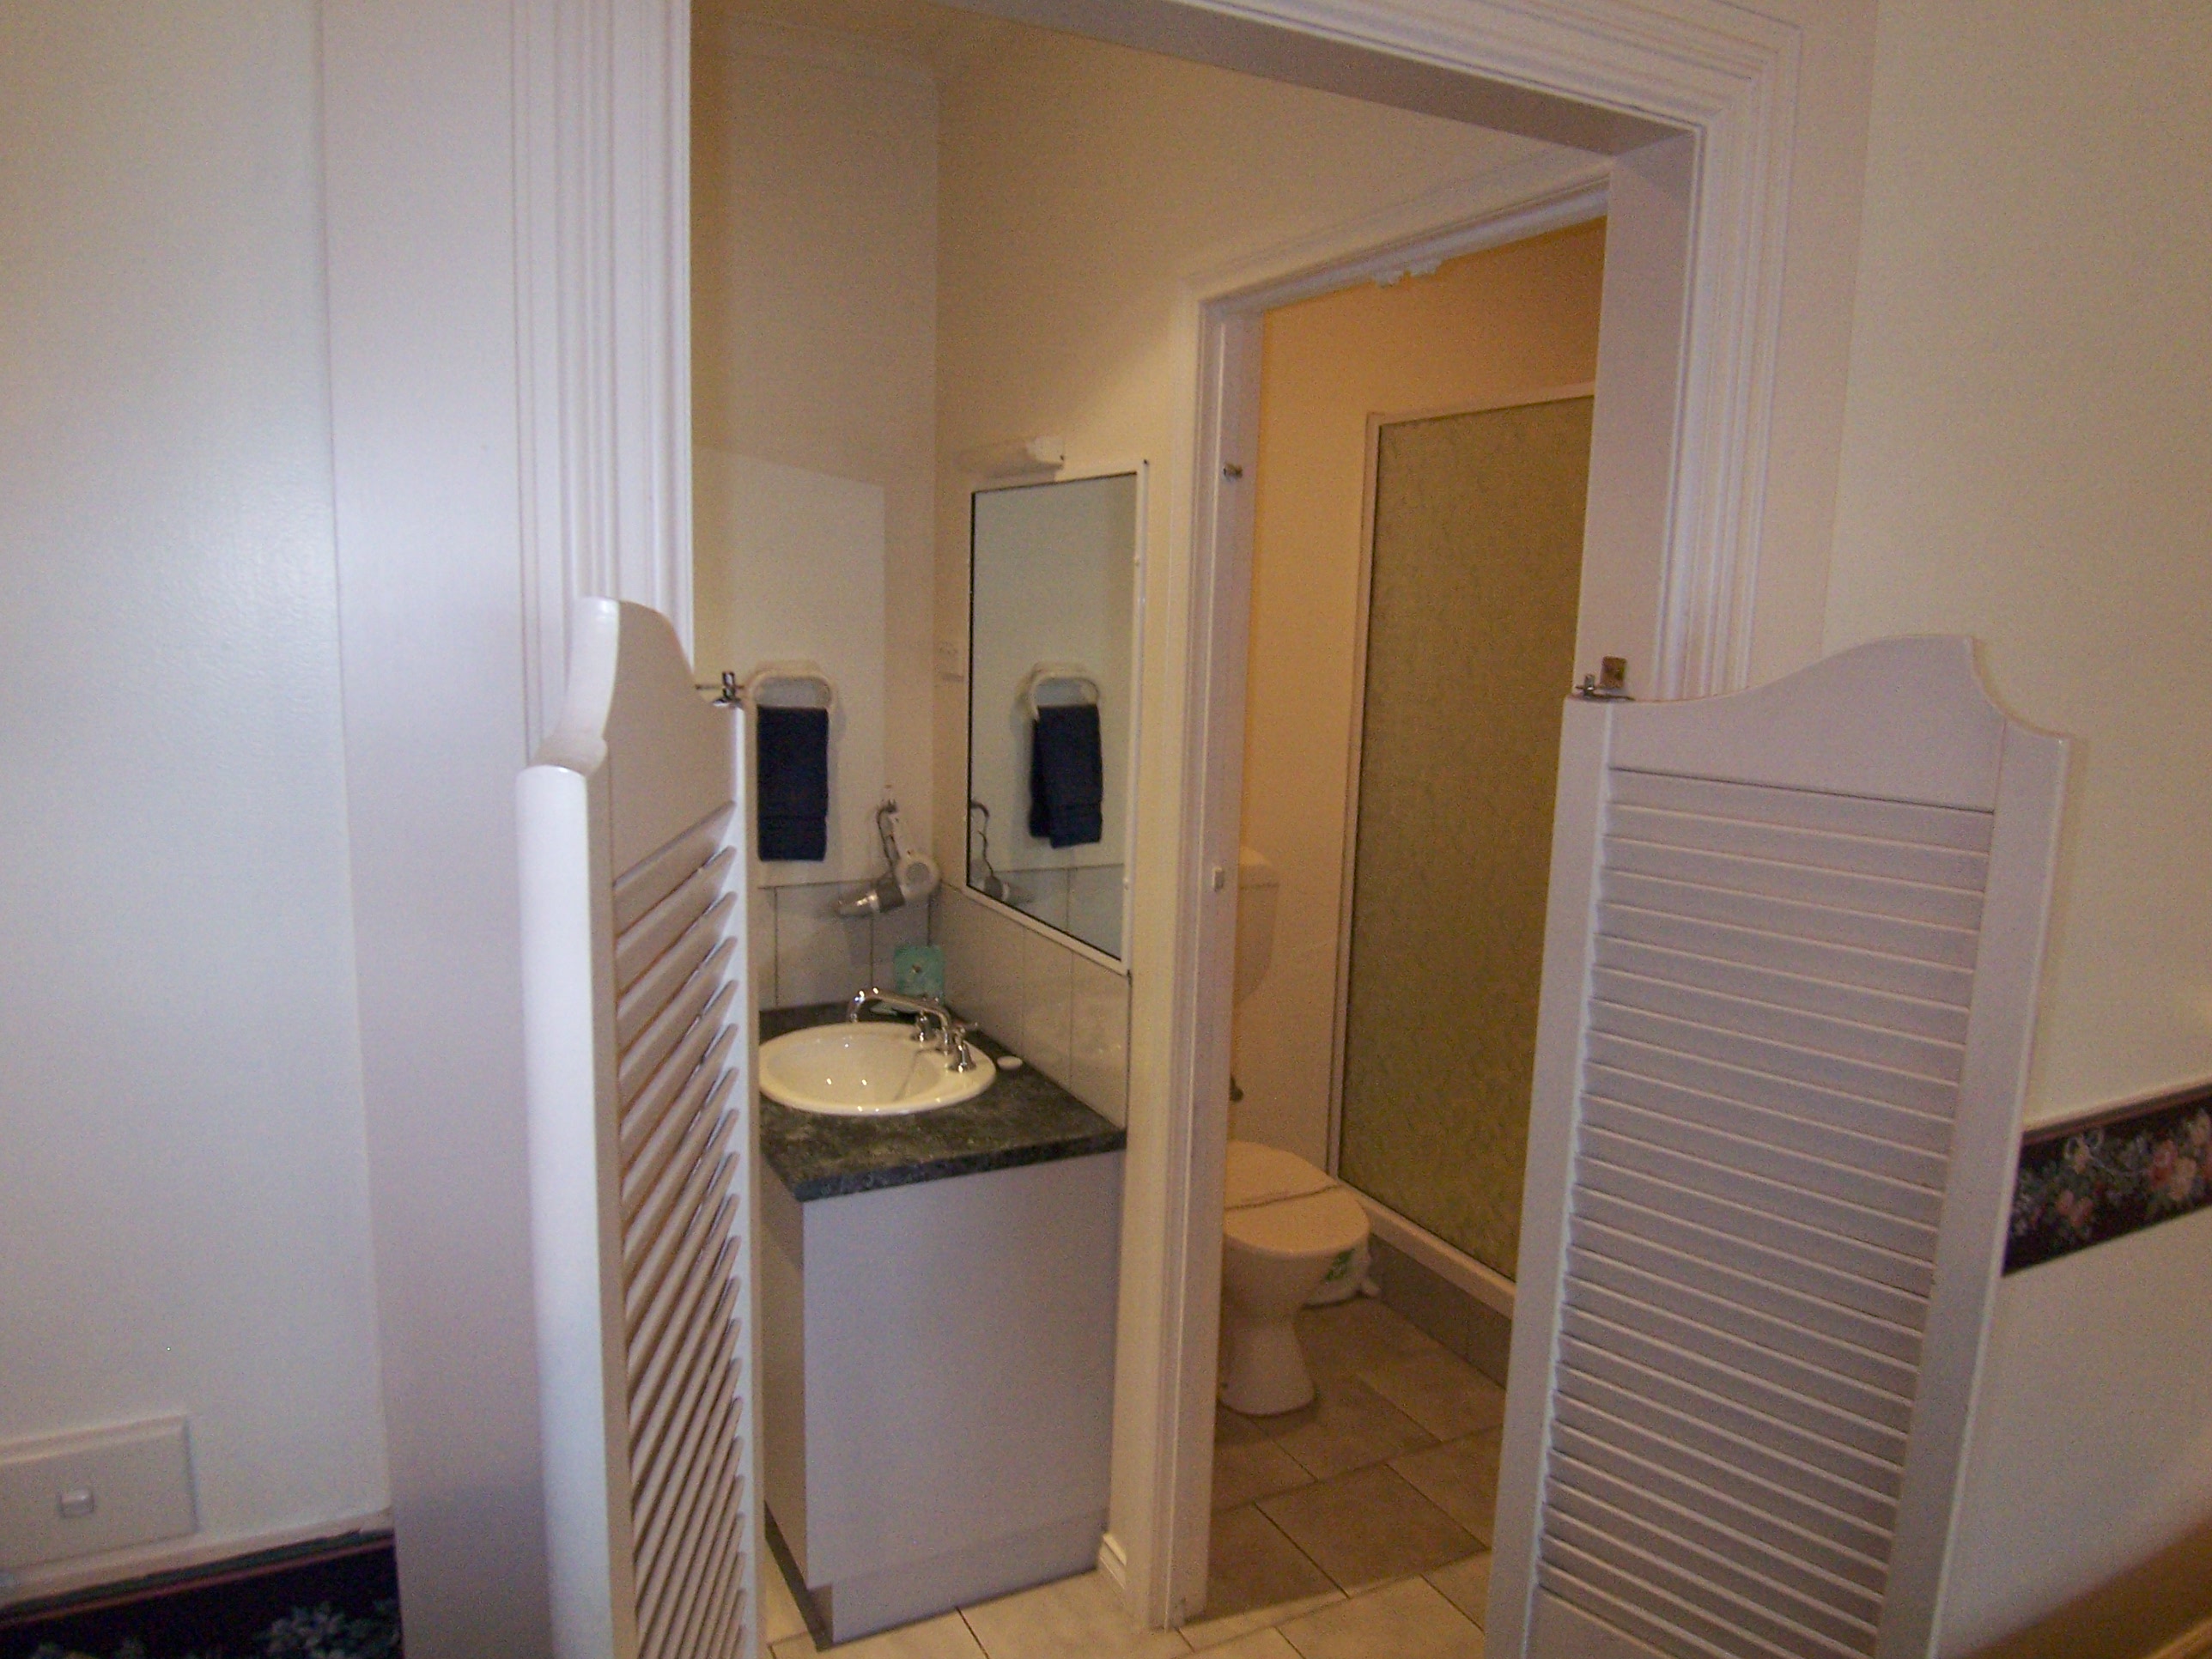 Ensuite bathroom with shower, separate handbasin area